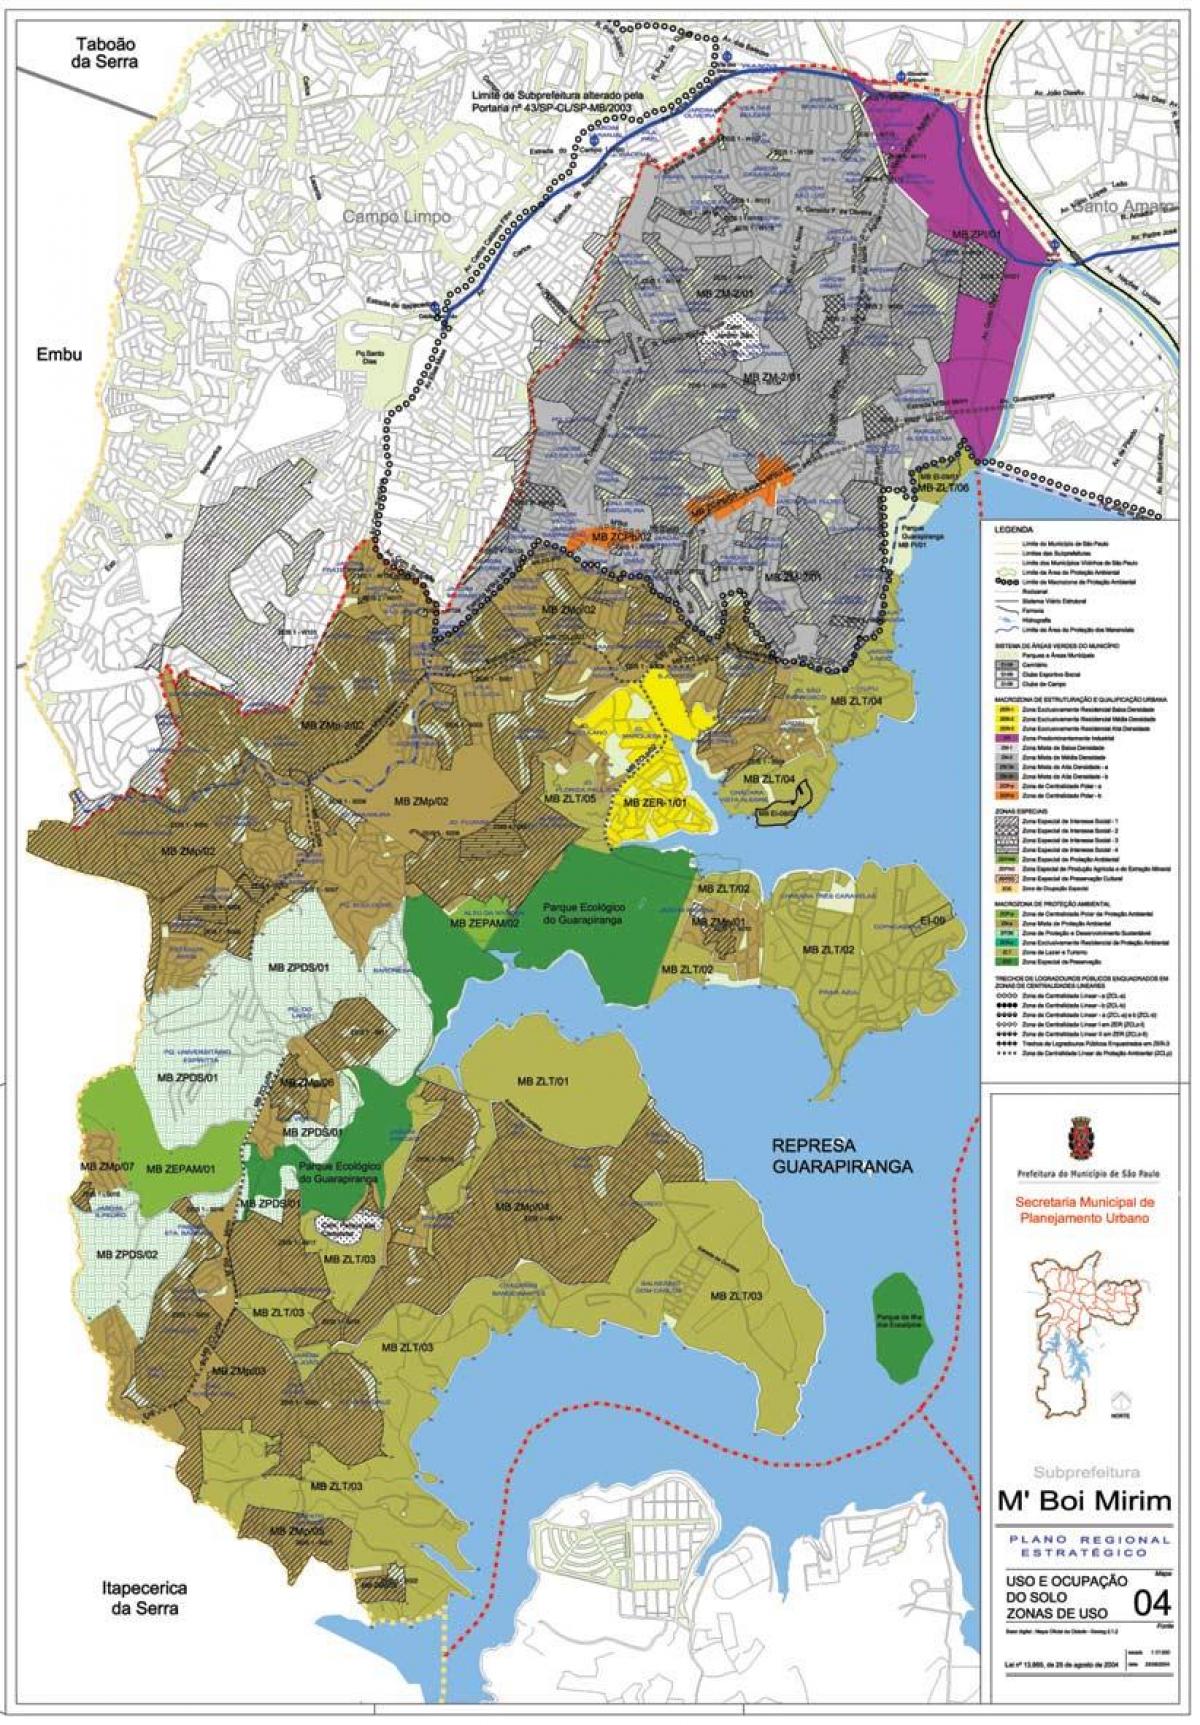 Kort over M'Boi Mirim São Paulo - Besættelse af jord